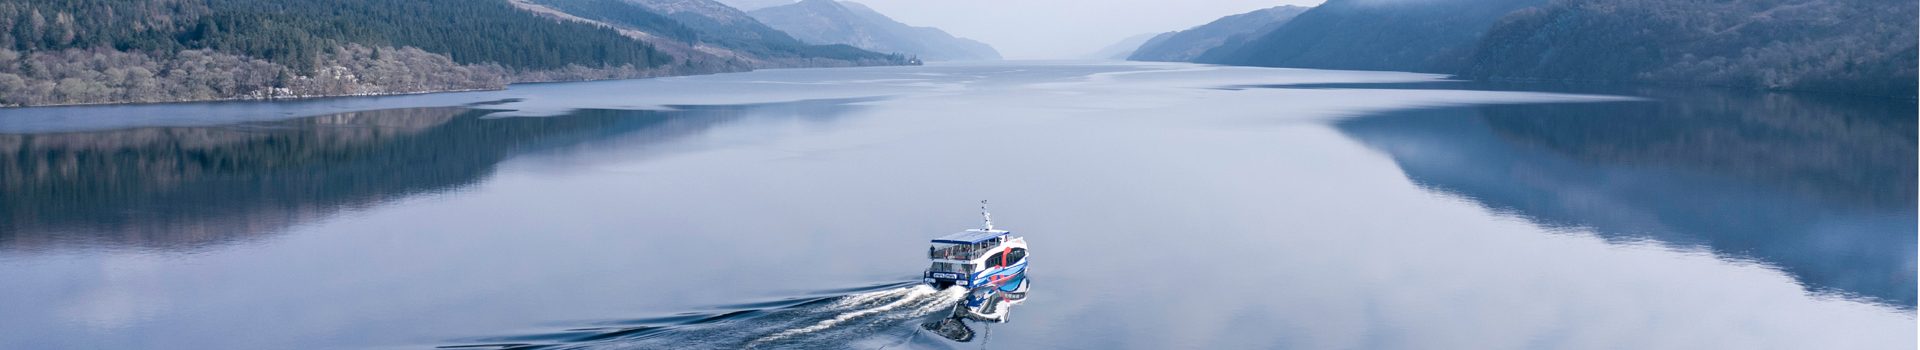 Cruise LA boat travelling across Loch Ness in Scotland